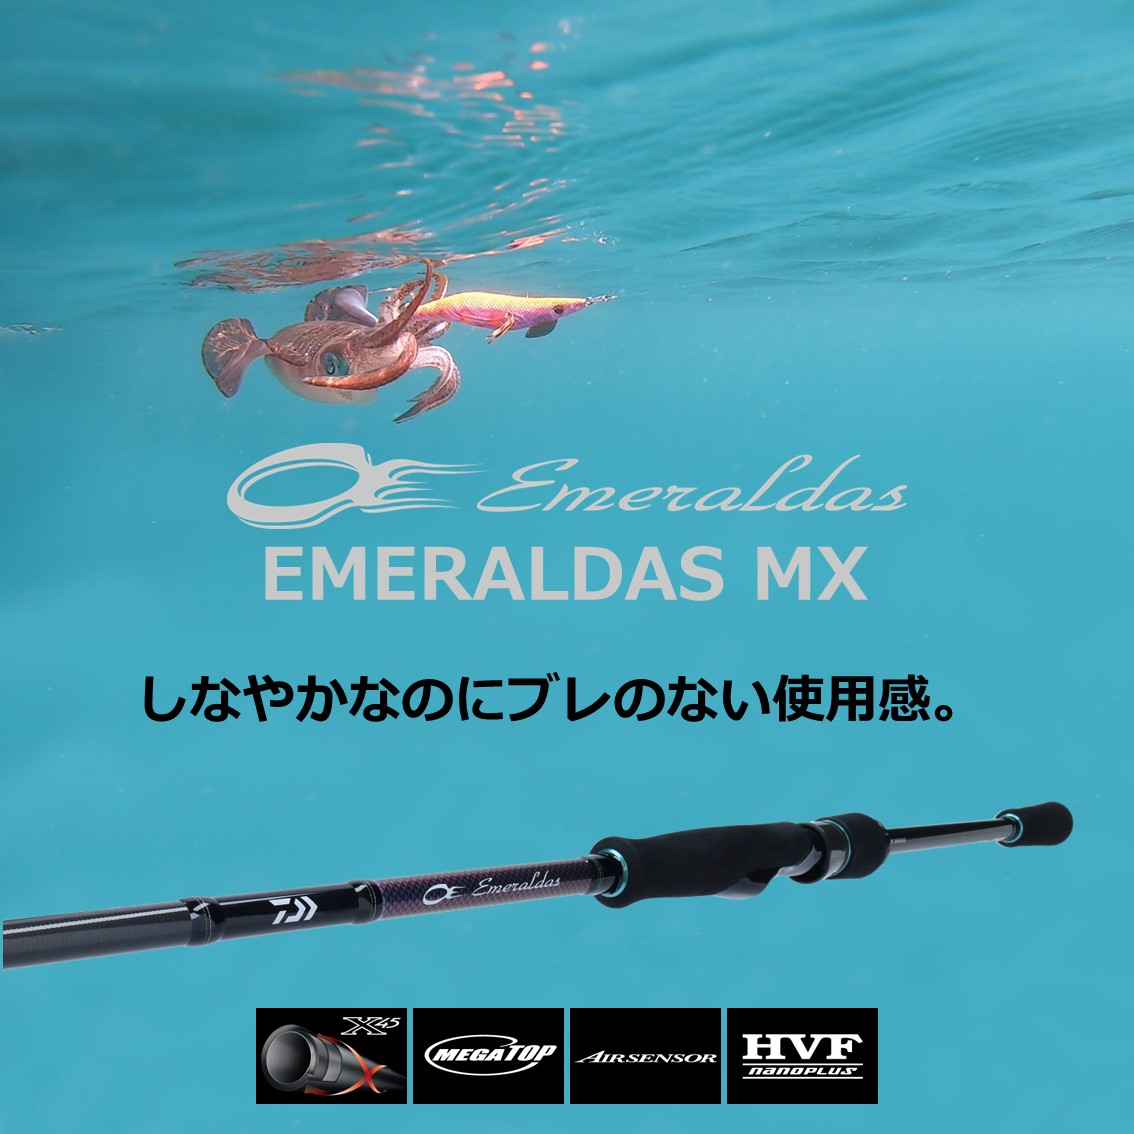 ダイワ 21 エメラルダスMX 83M N (エギングロッド) - 釣り具の販売、通販なら、フィッシング遊-WEB本店 ダイワ ／シマノ／がまかつの釣具ならおまかせ